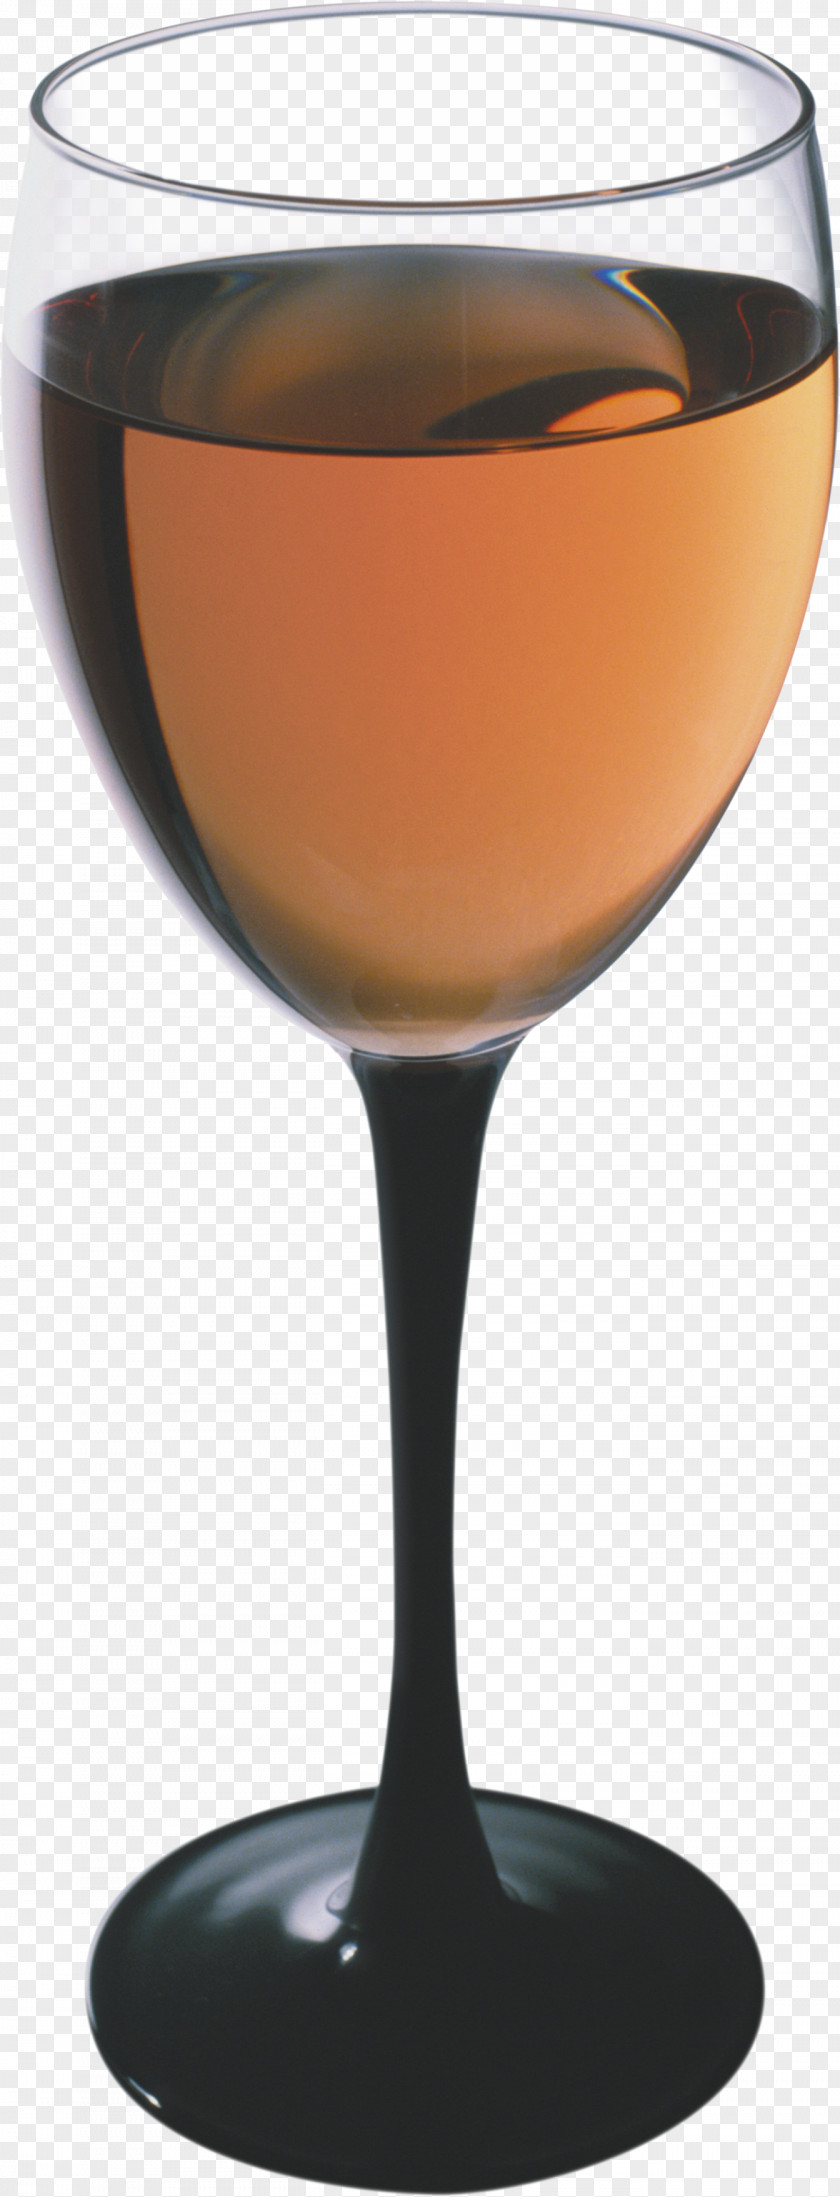 Glass Image Whisky Wine Cocktail Distilled Beverage PNG